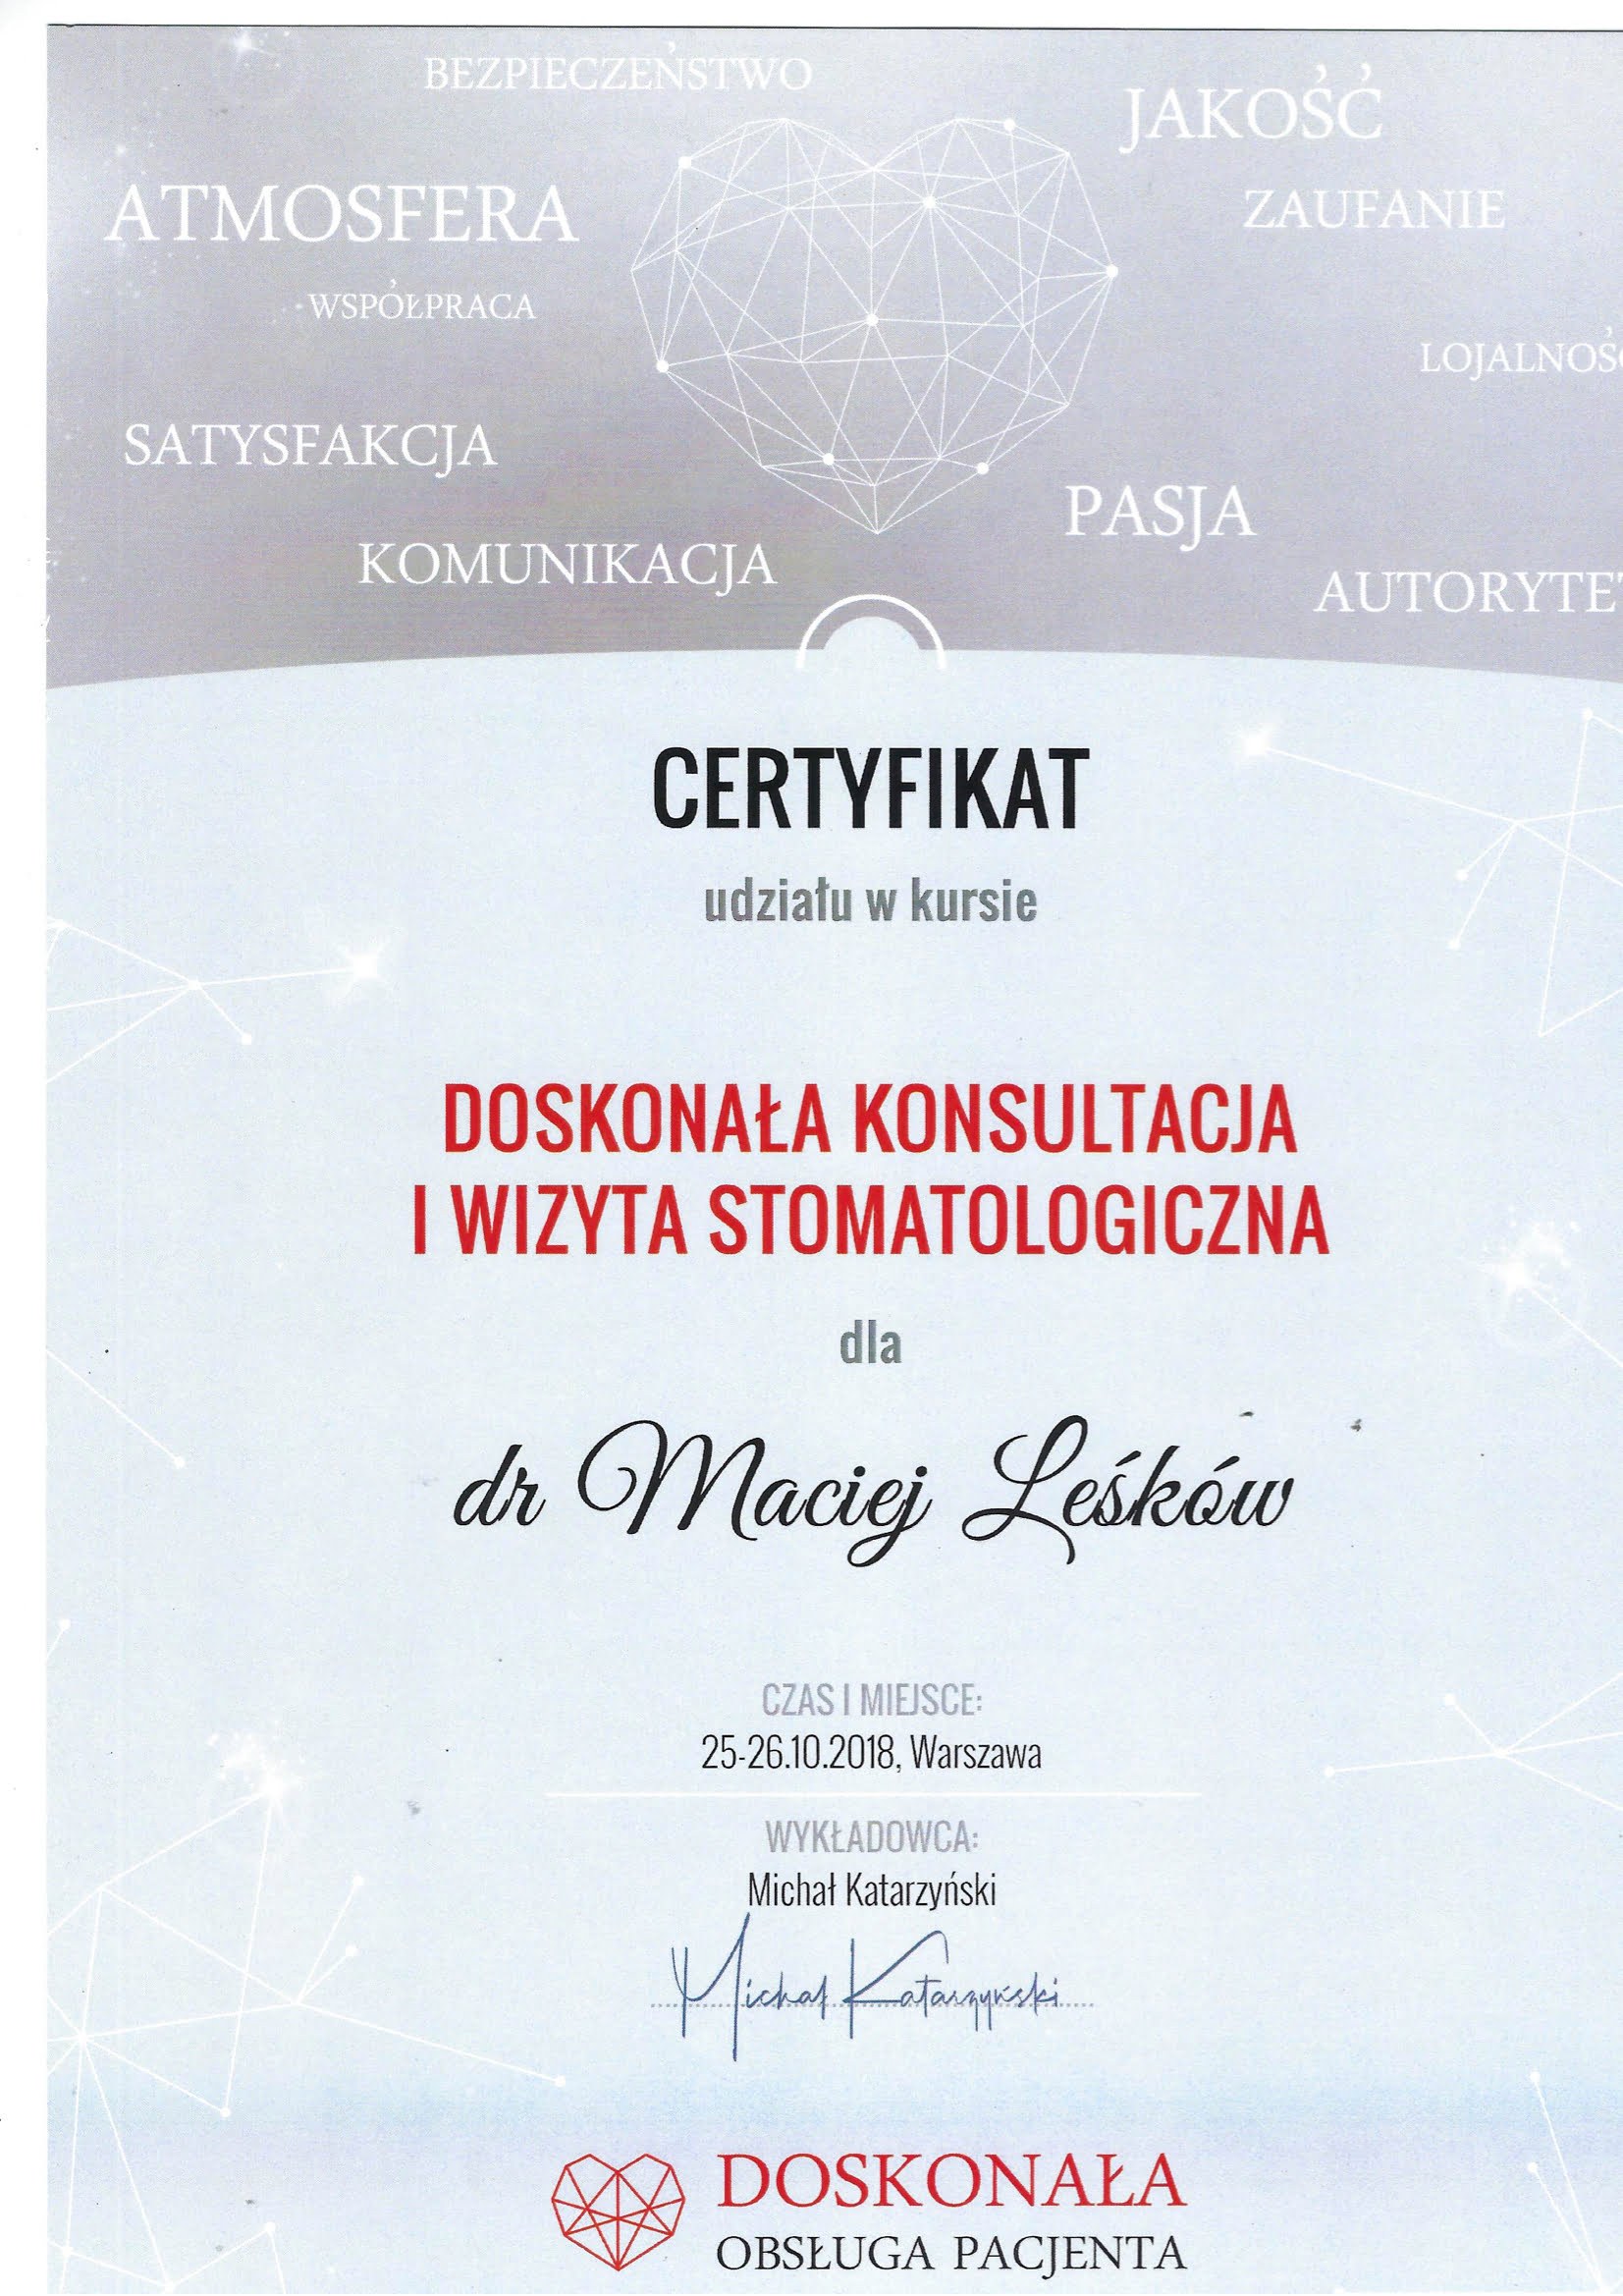 Maciej Leśków certyfikat 15